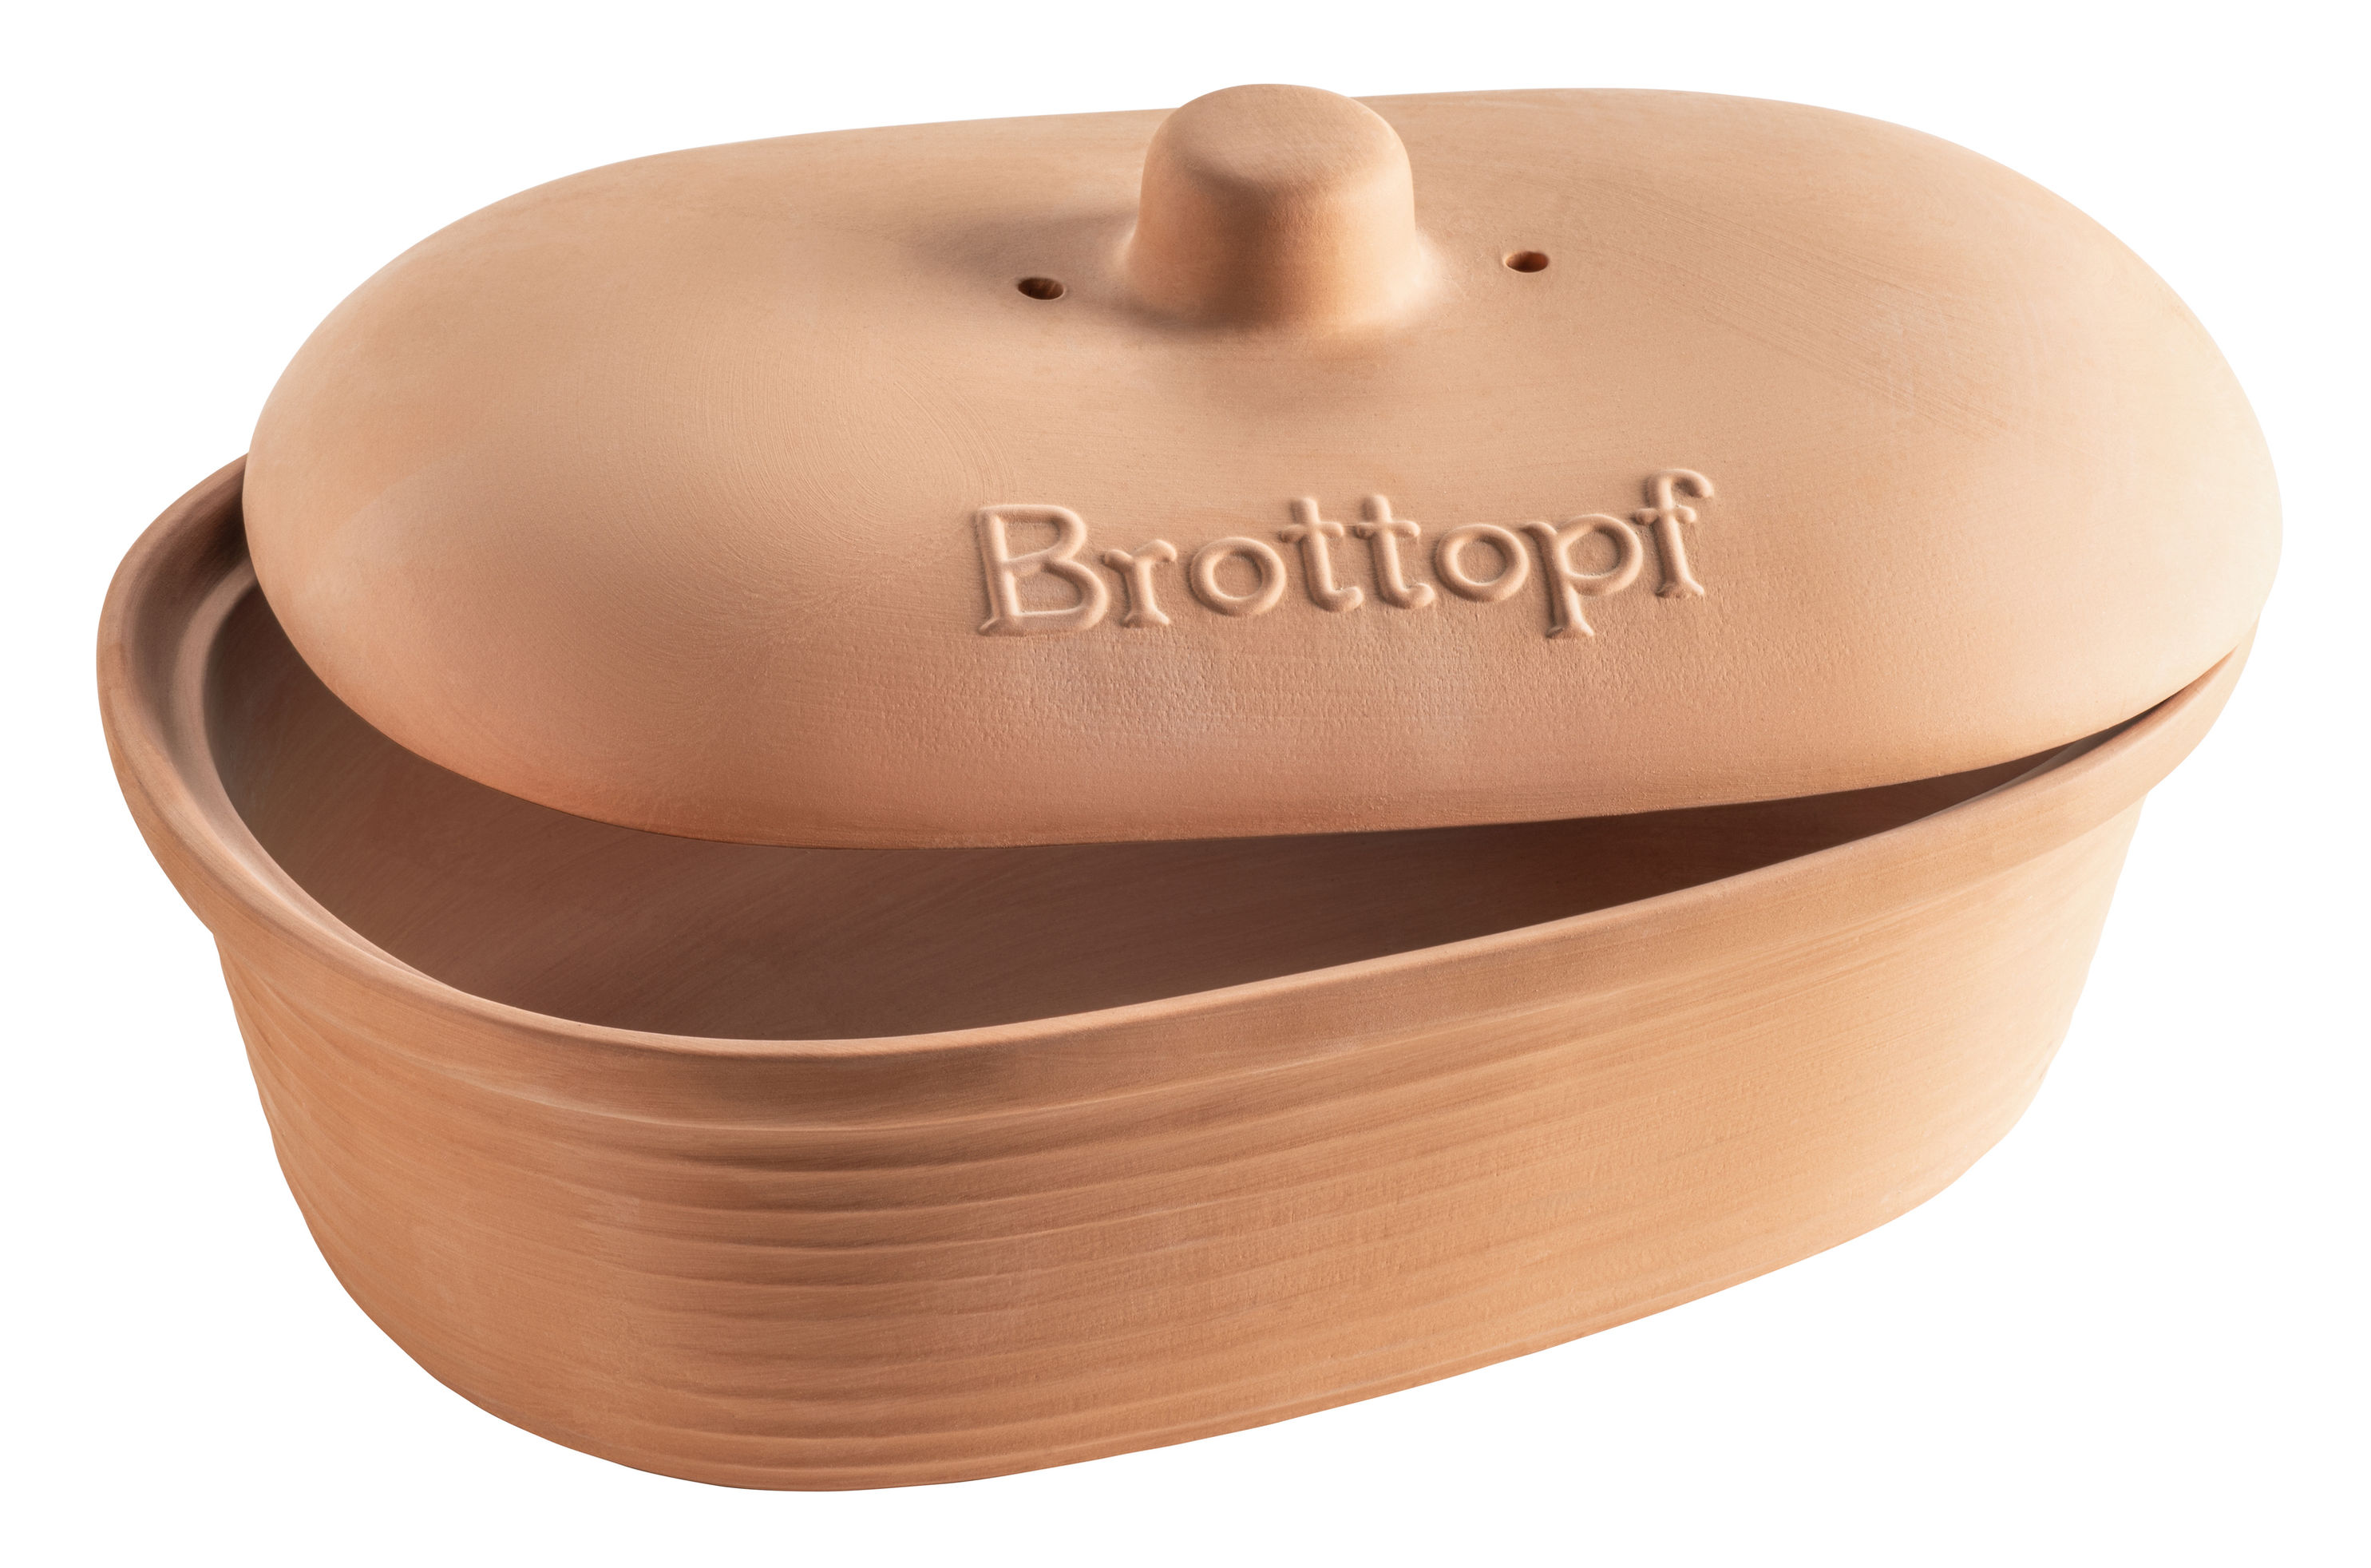 Mäser Brottopf, Steingut Ceramica jetzt bei Weltbild.de bestellen